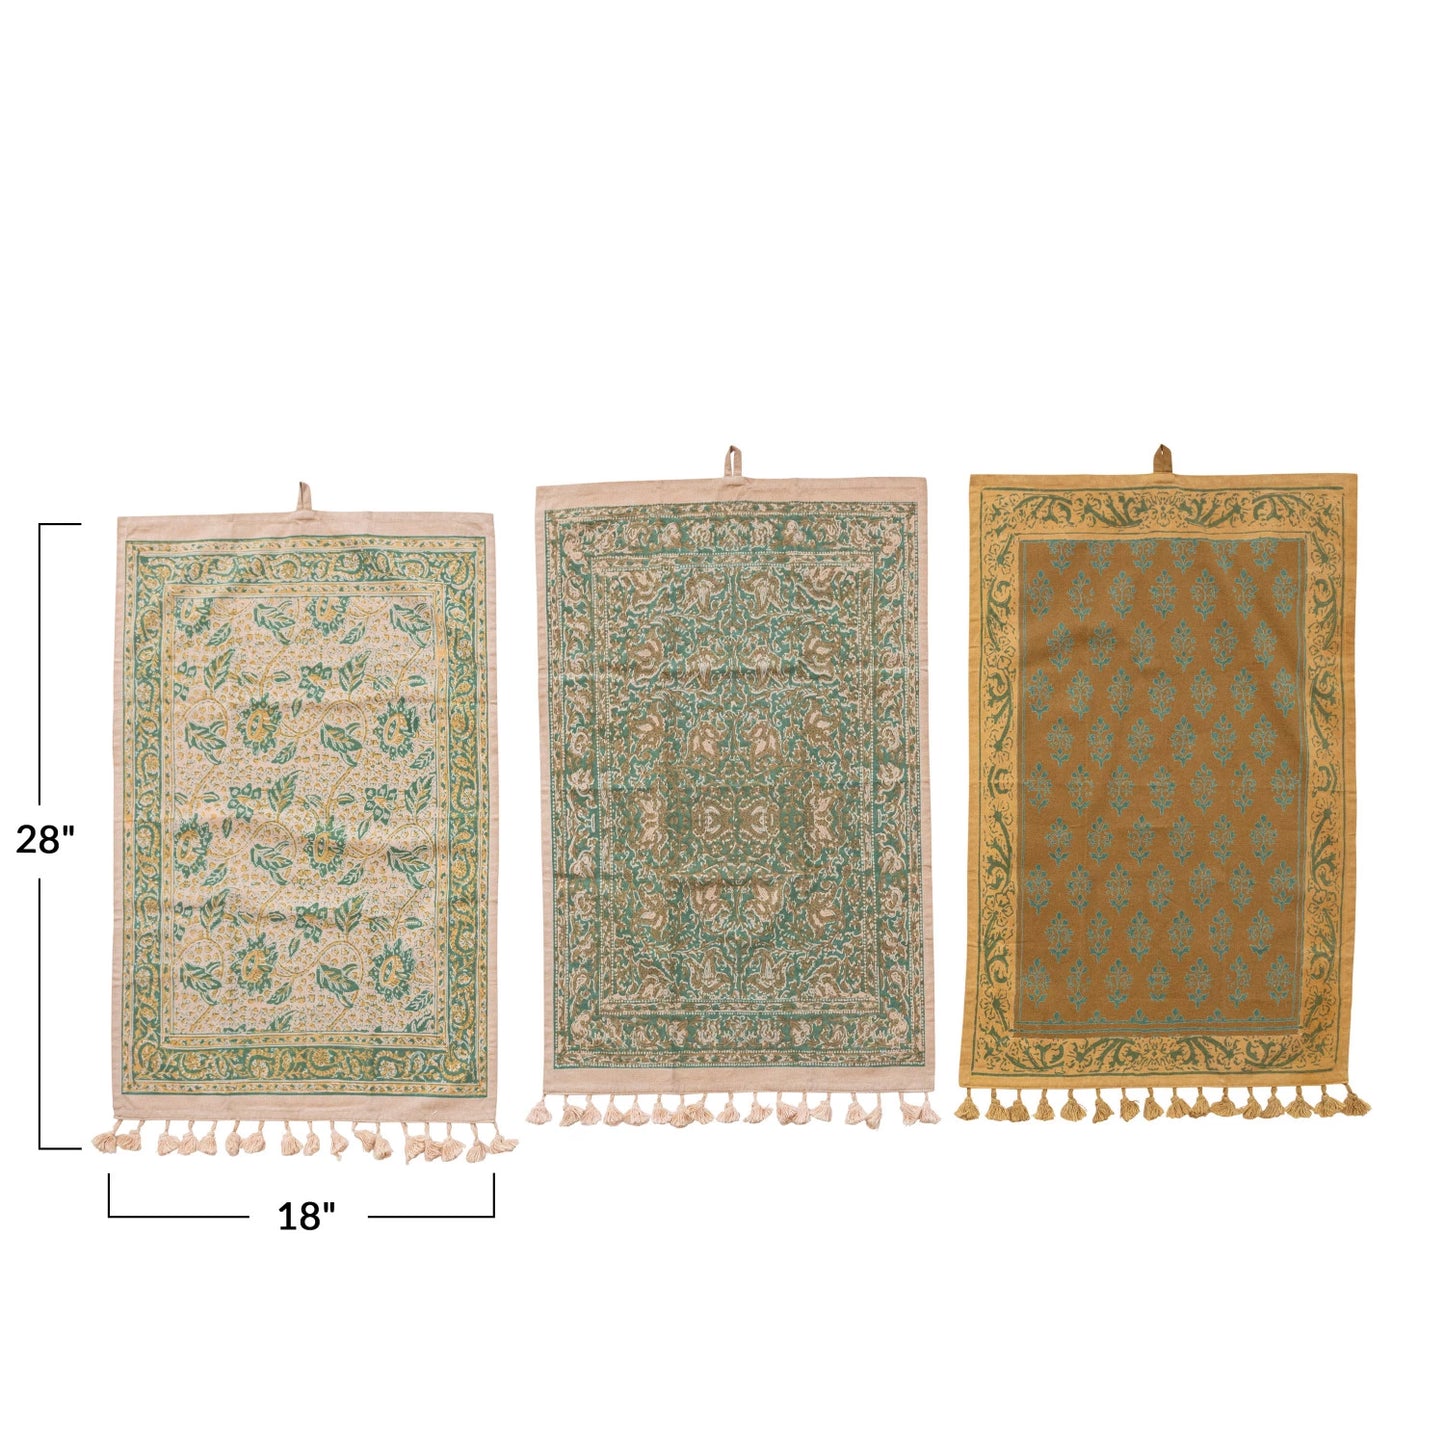 Anika Cotton Printed Tea Towels with Tassels & Loop